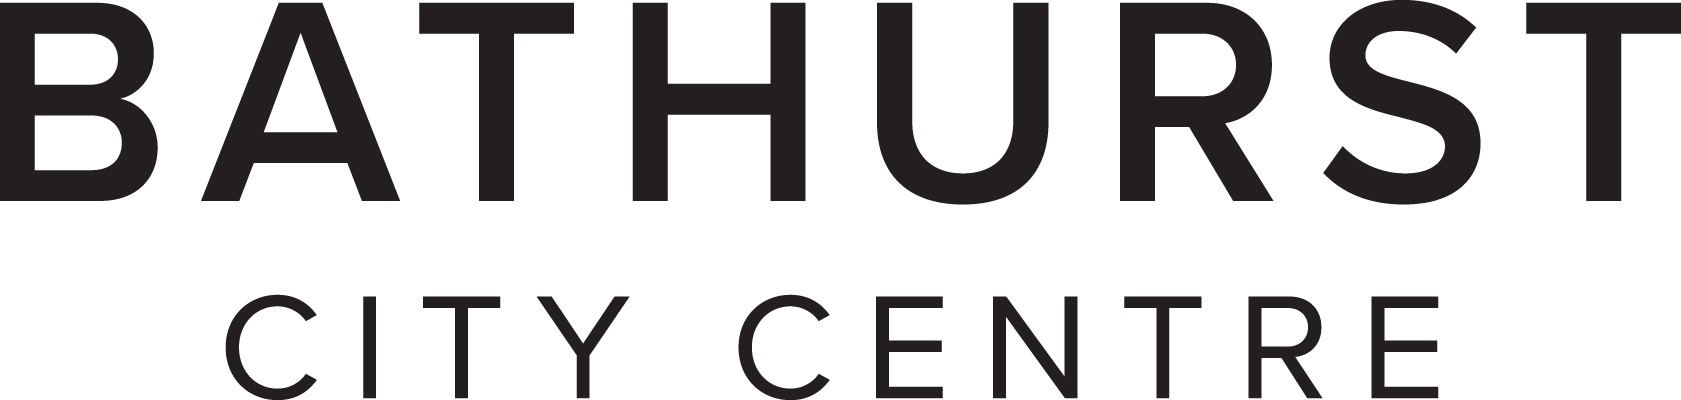 Bathurst City Centre logo 2017.jpg